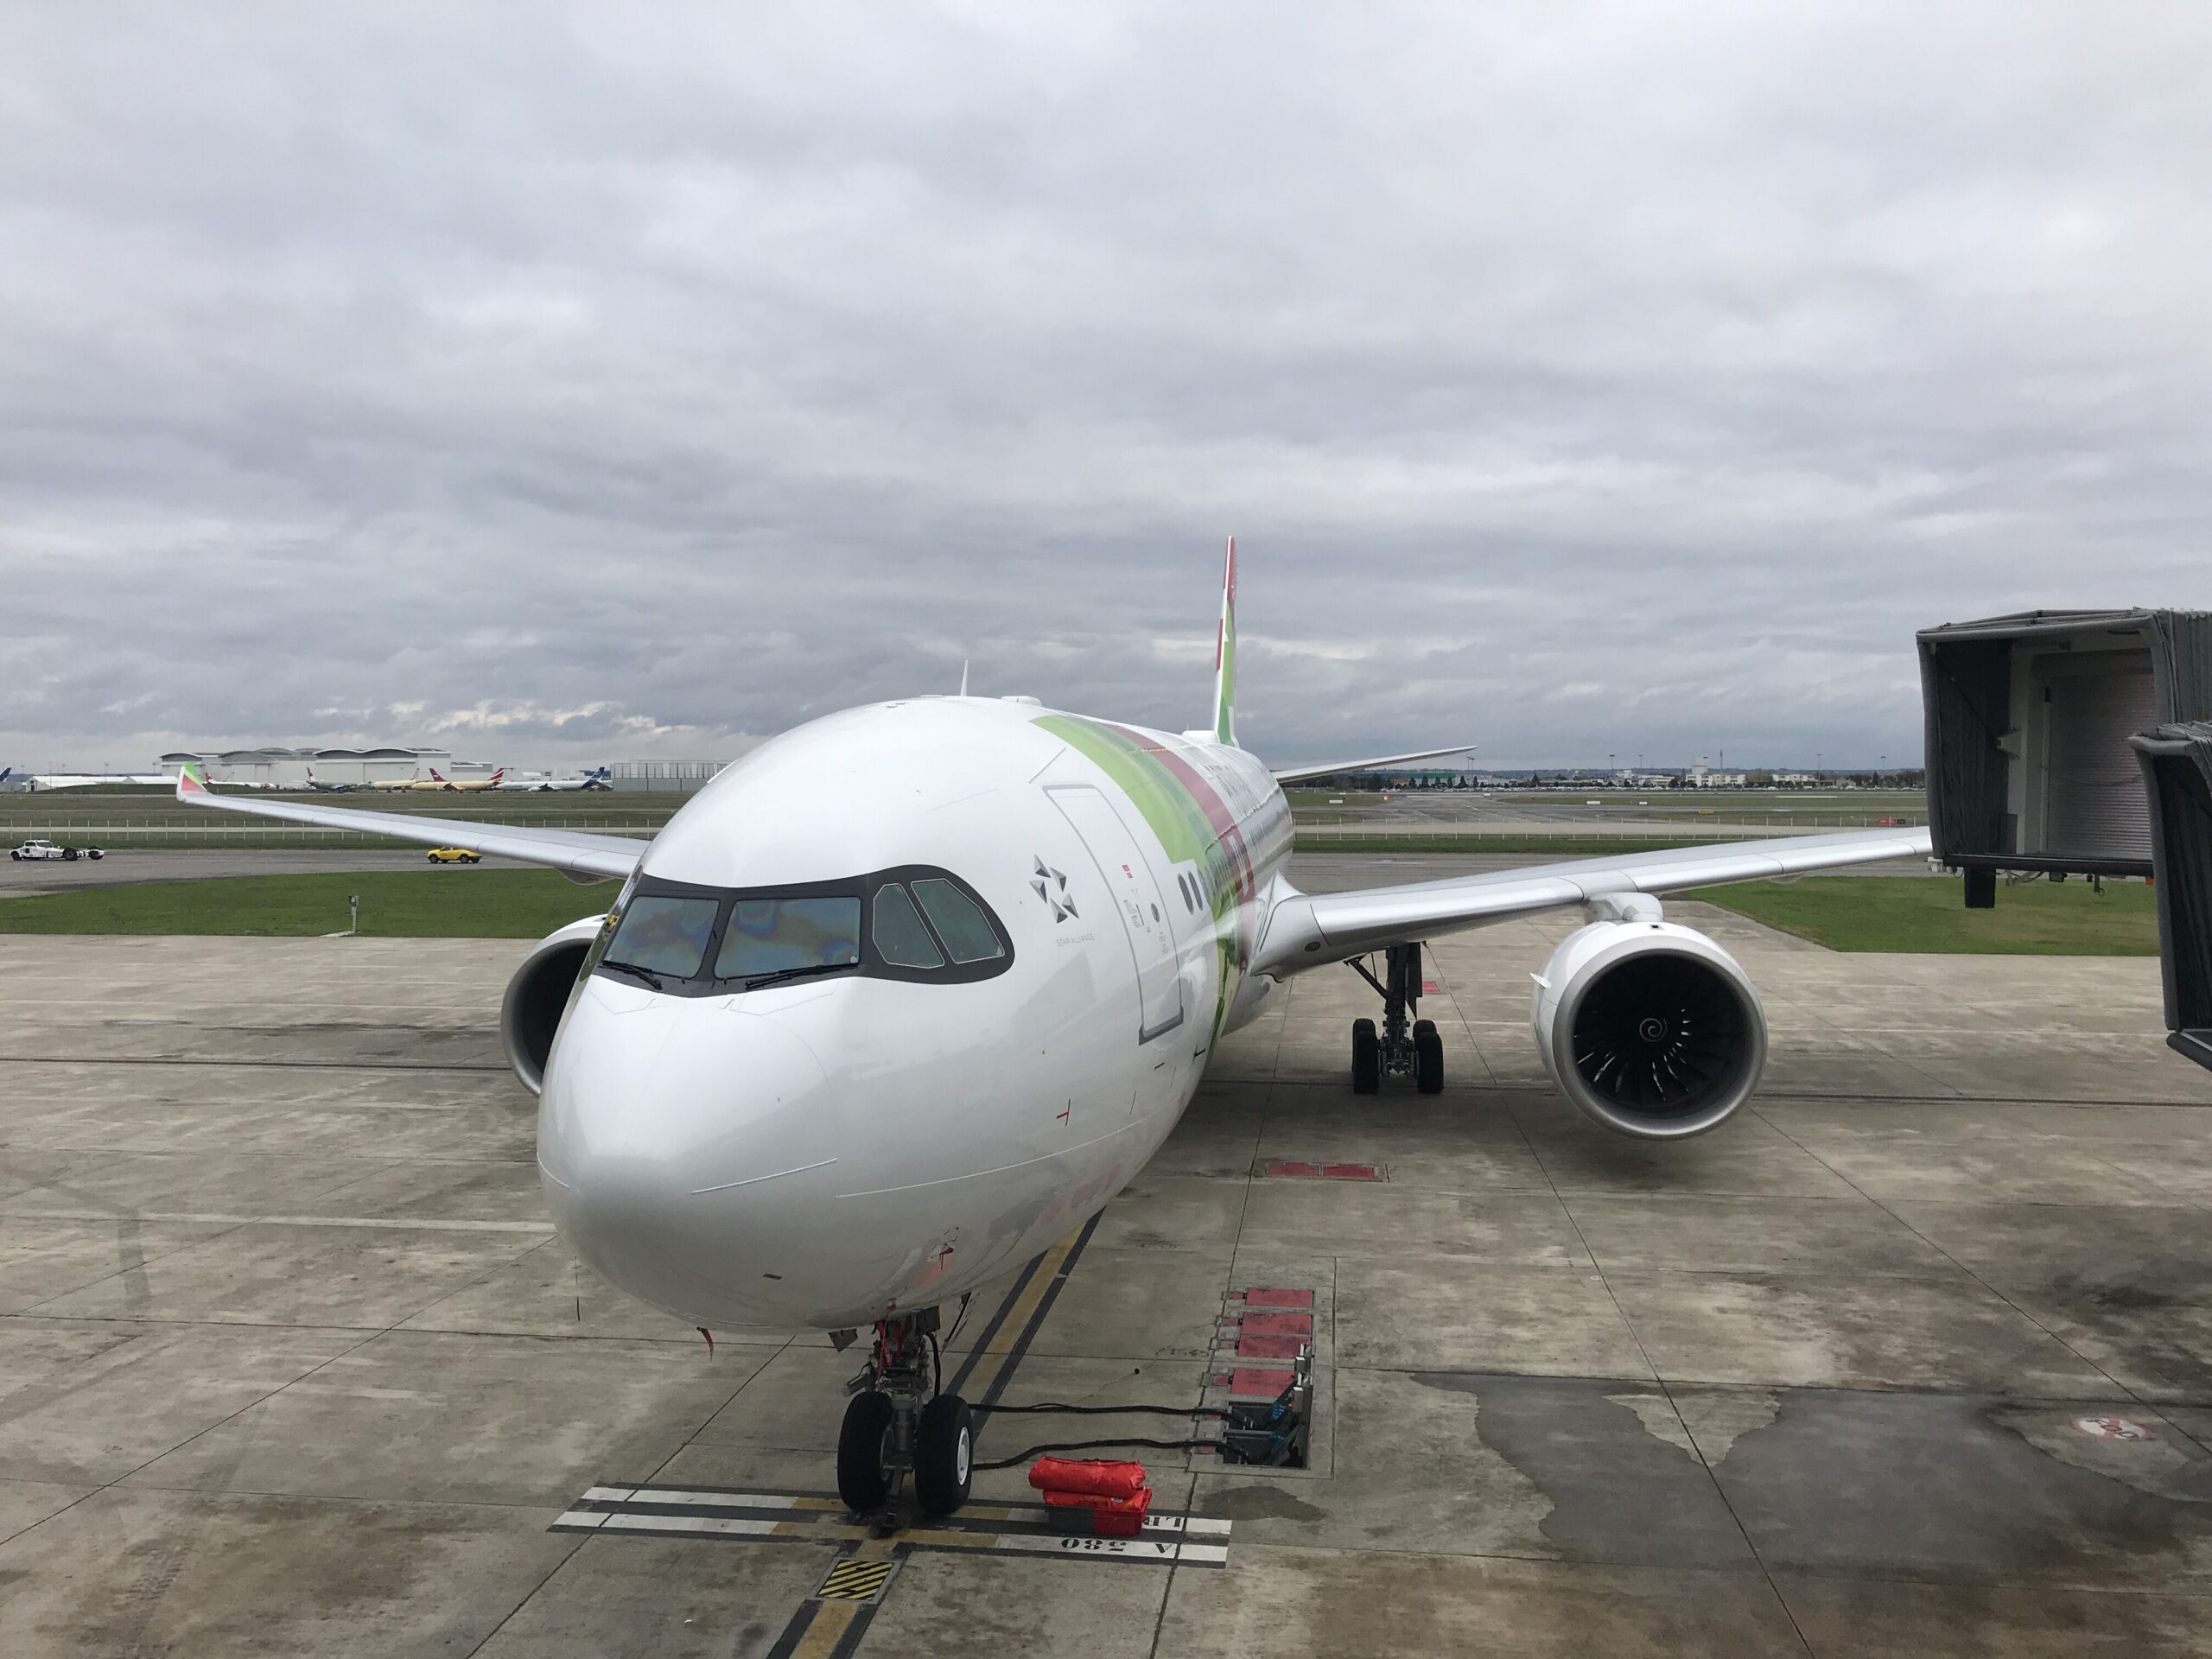 TAP Air Portugal A330neo